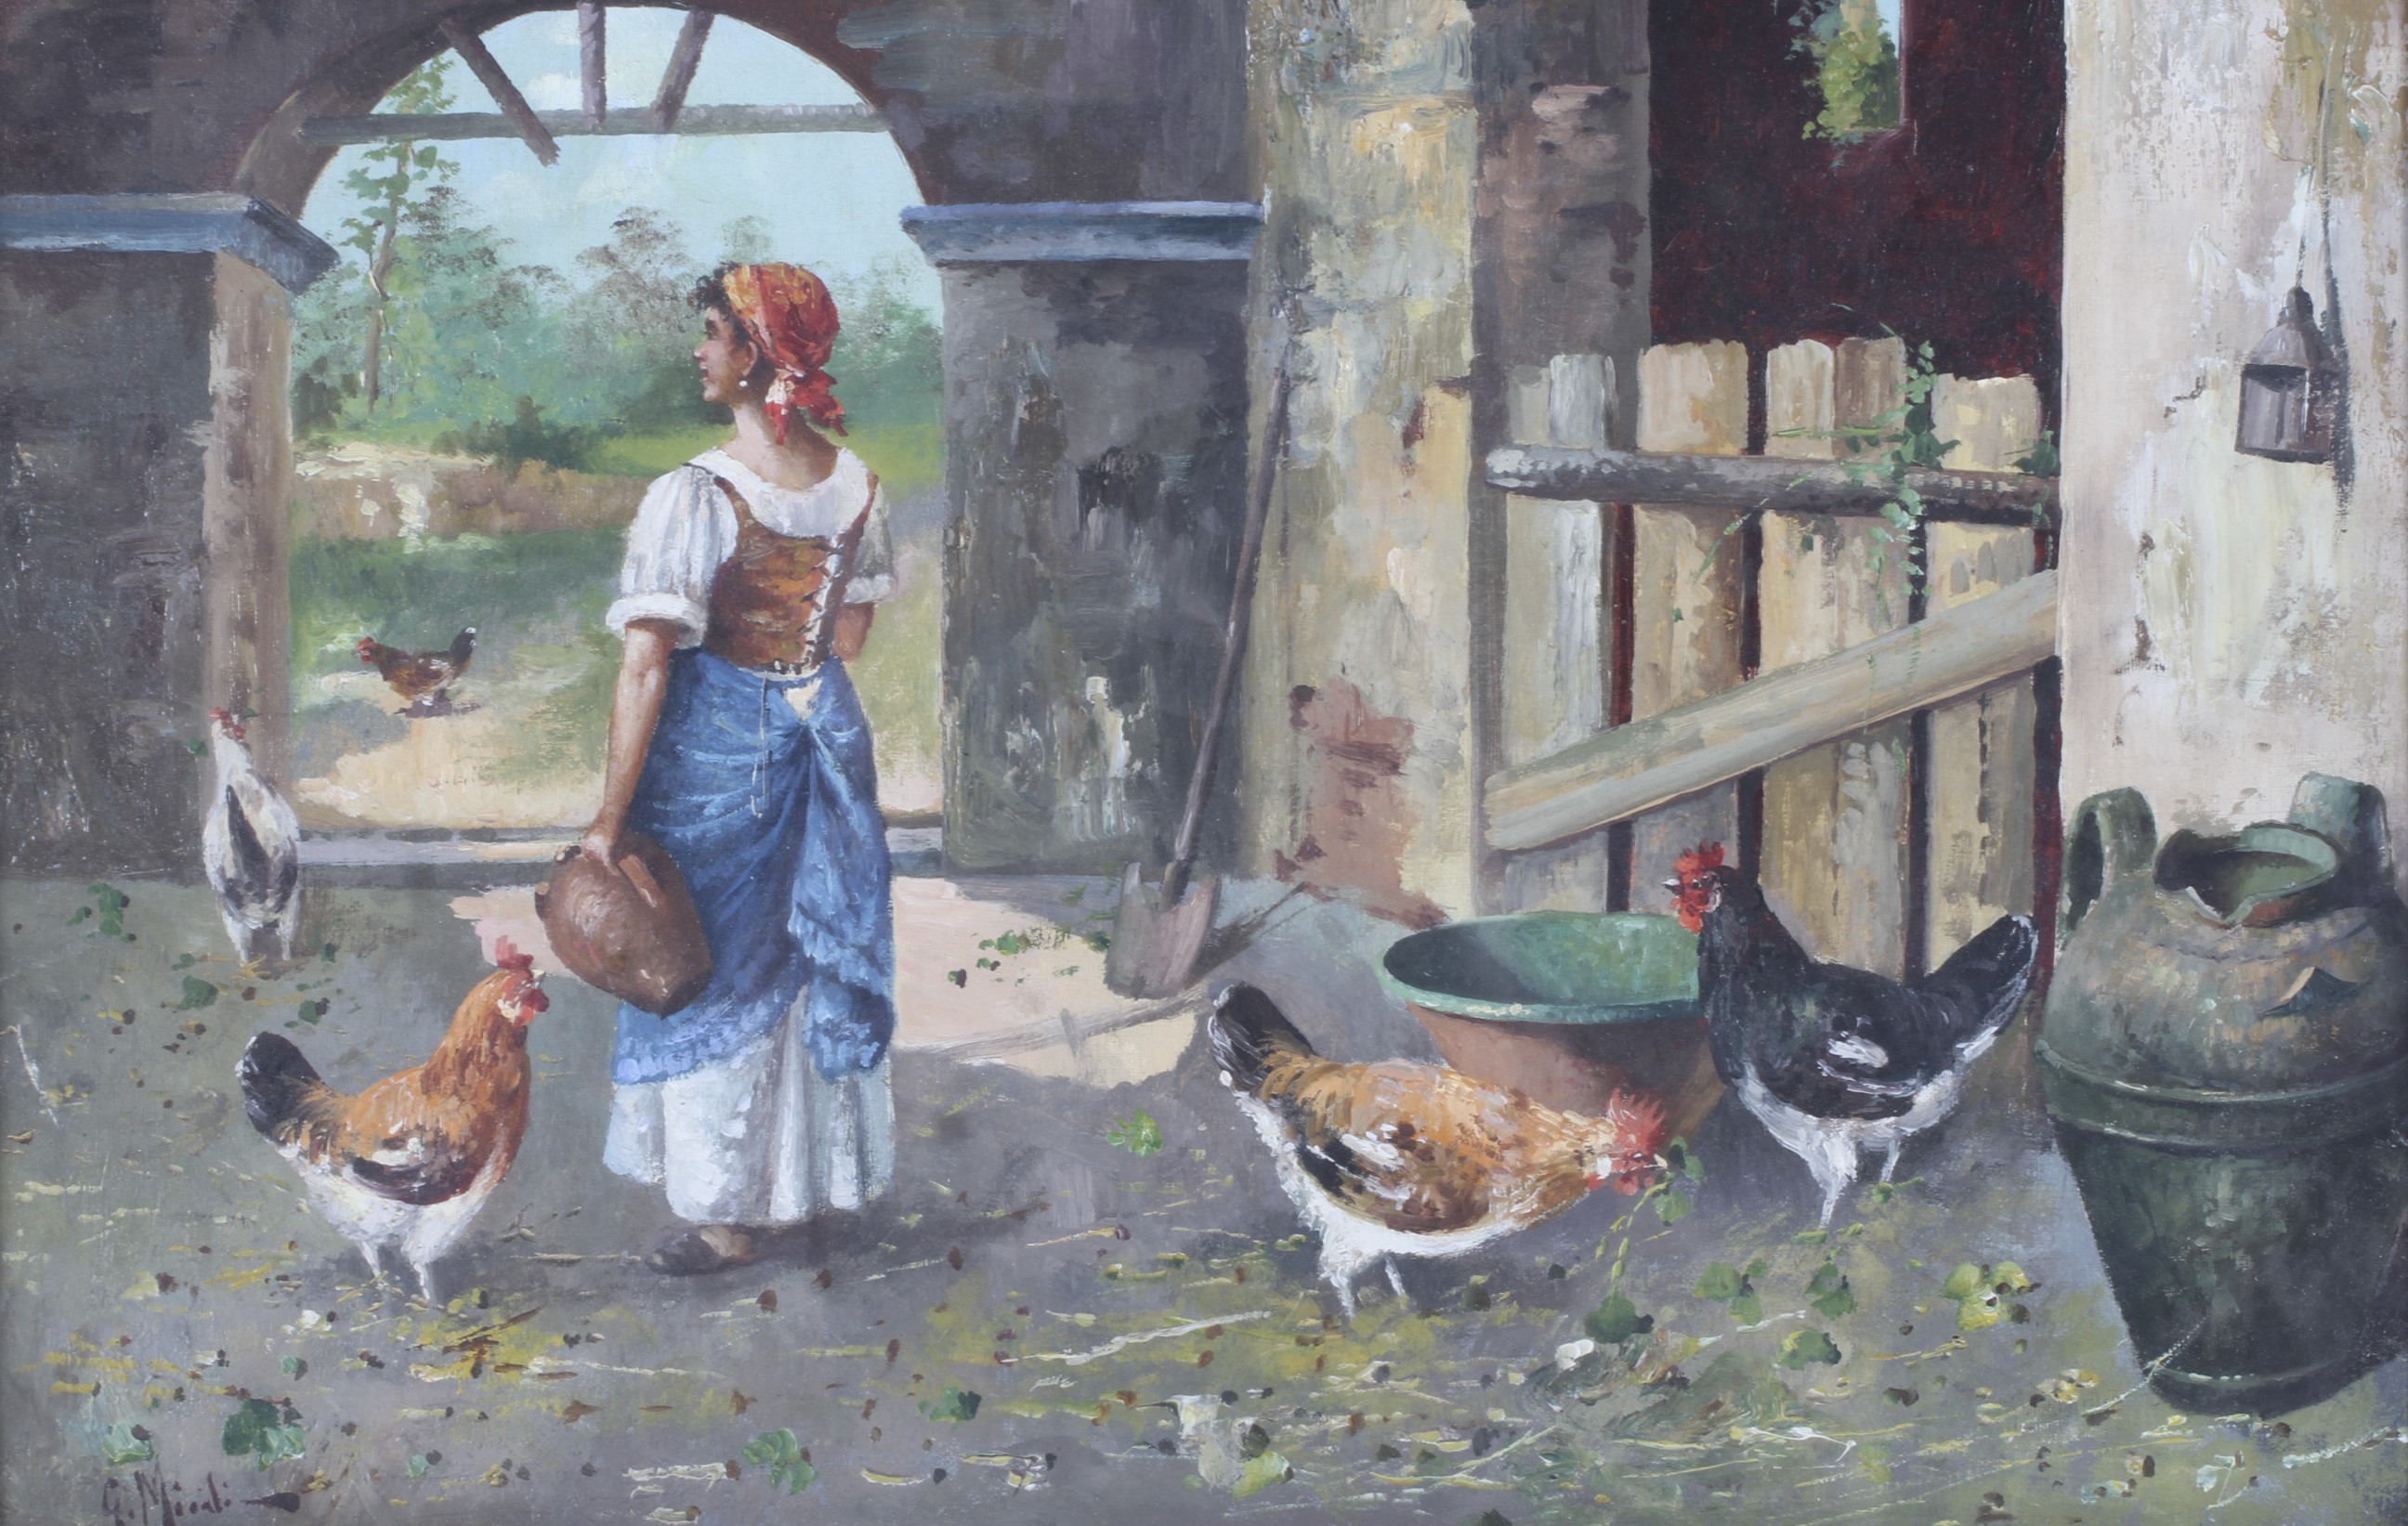 Late 19th/Early 20th Century Continental School, Farm Girl Feeding Chickens in a Barn,